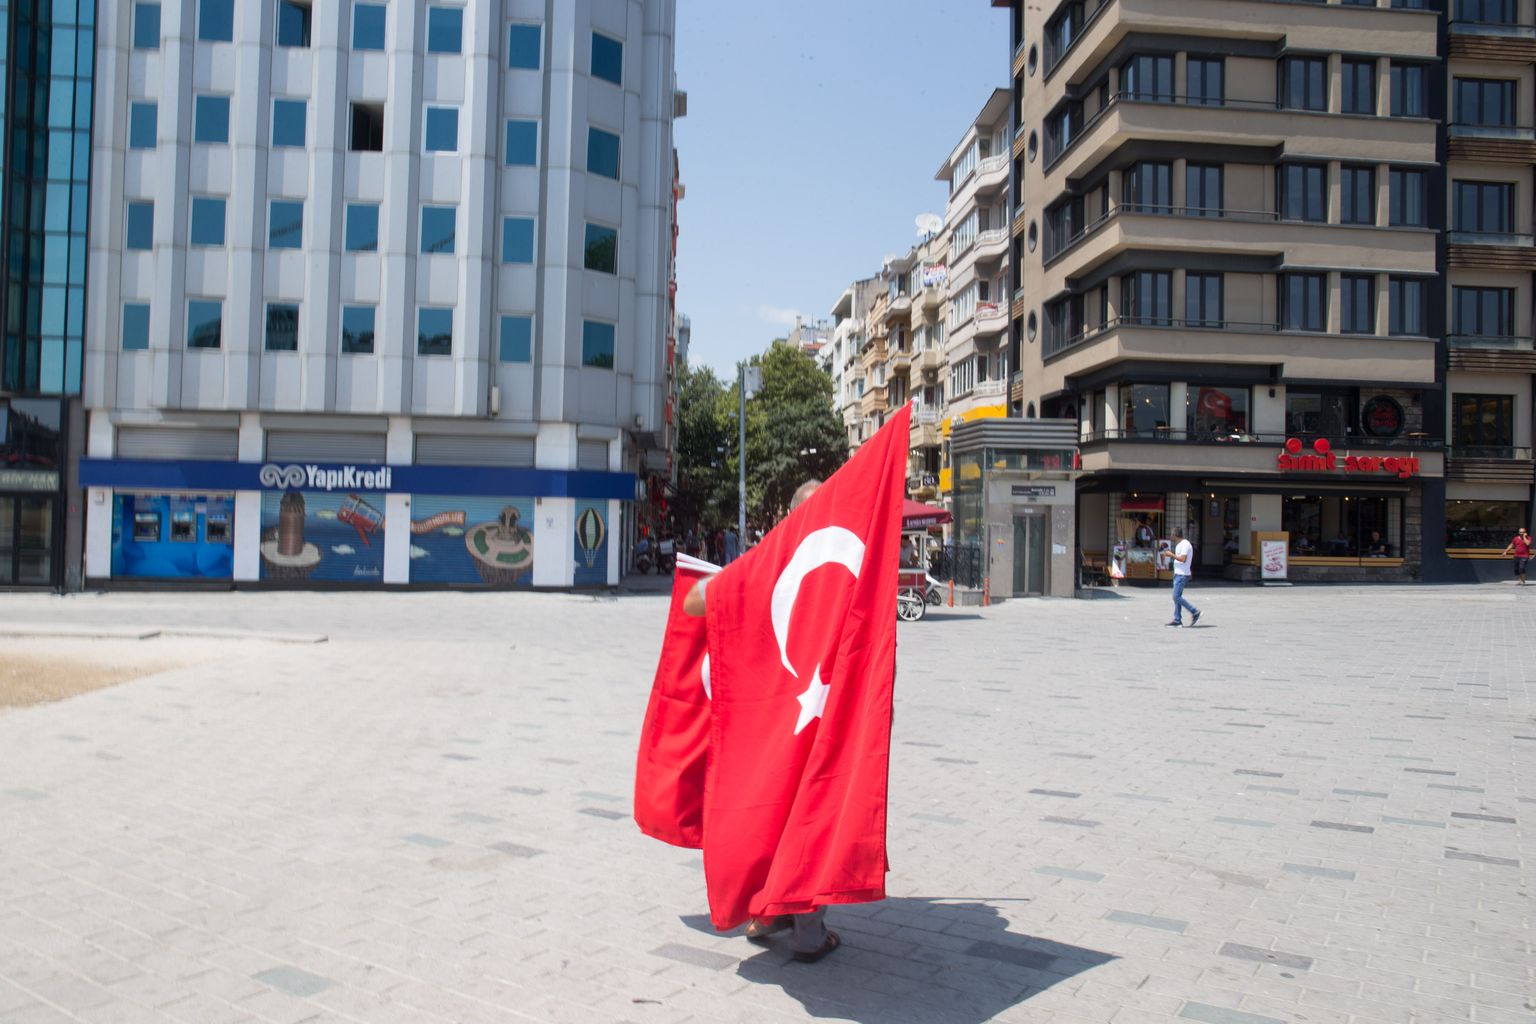 Istanbuli tänavatele oli eilseks naasnud rahu ja vaikus, uue elemendina nägi vaid varasemast märksa enam Türgi lippe.